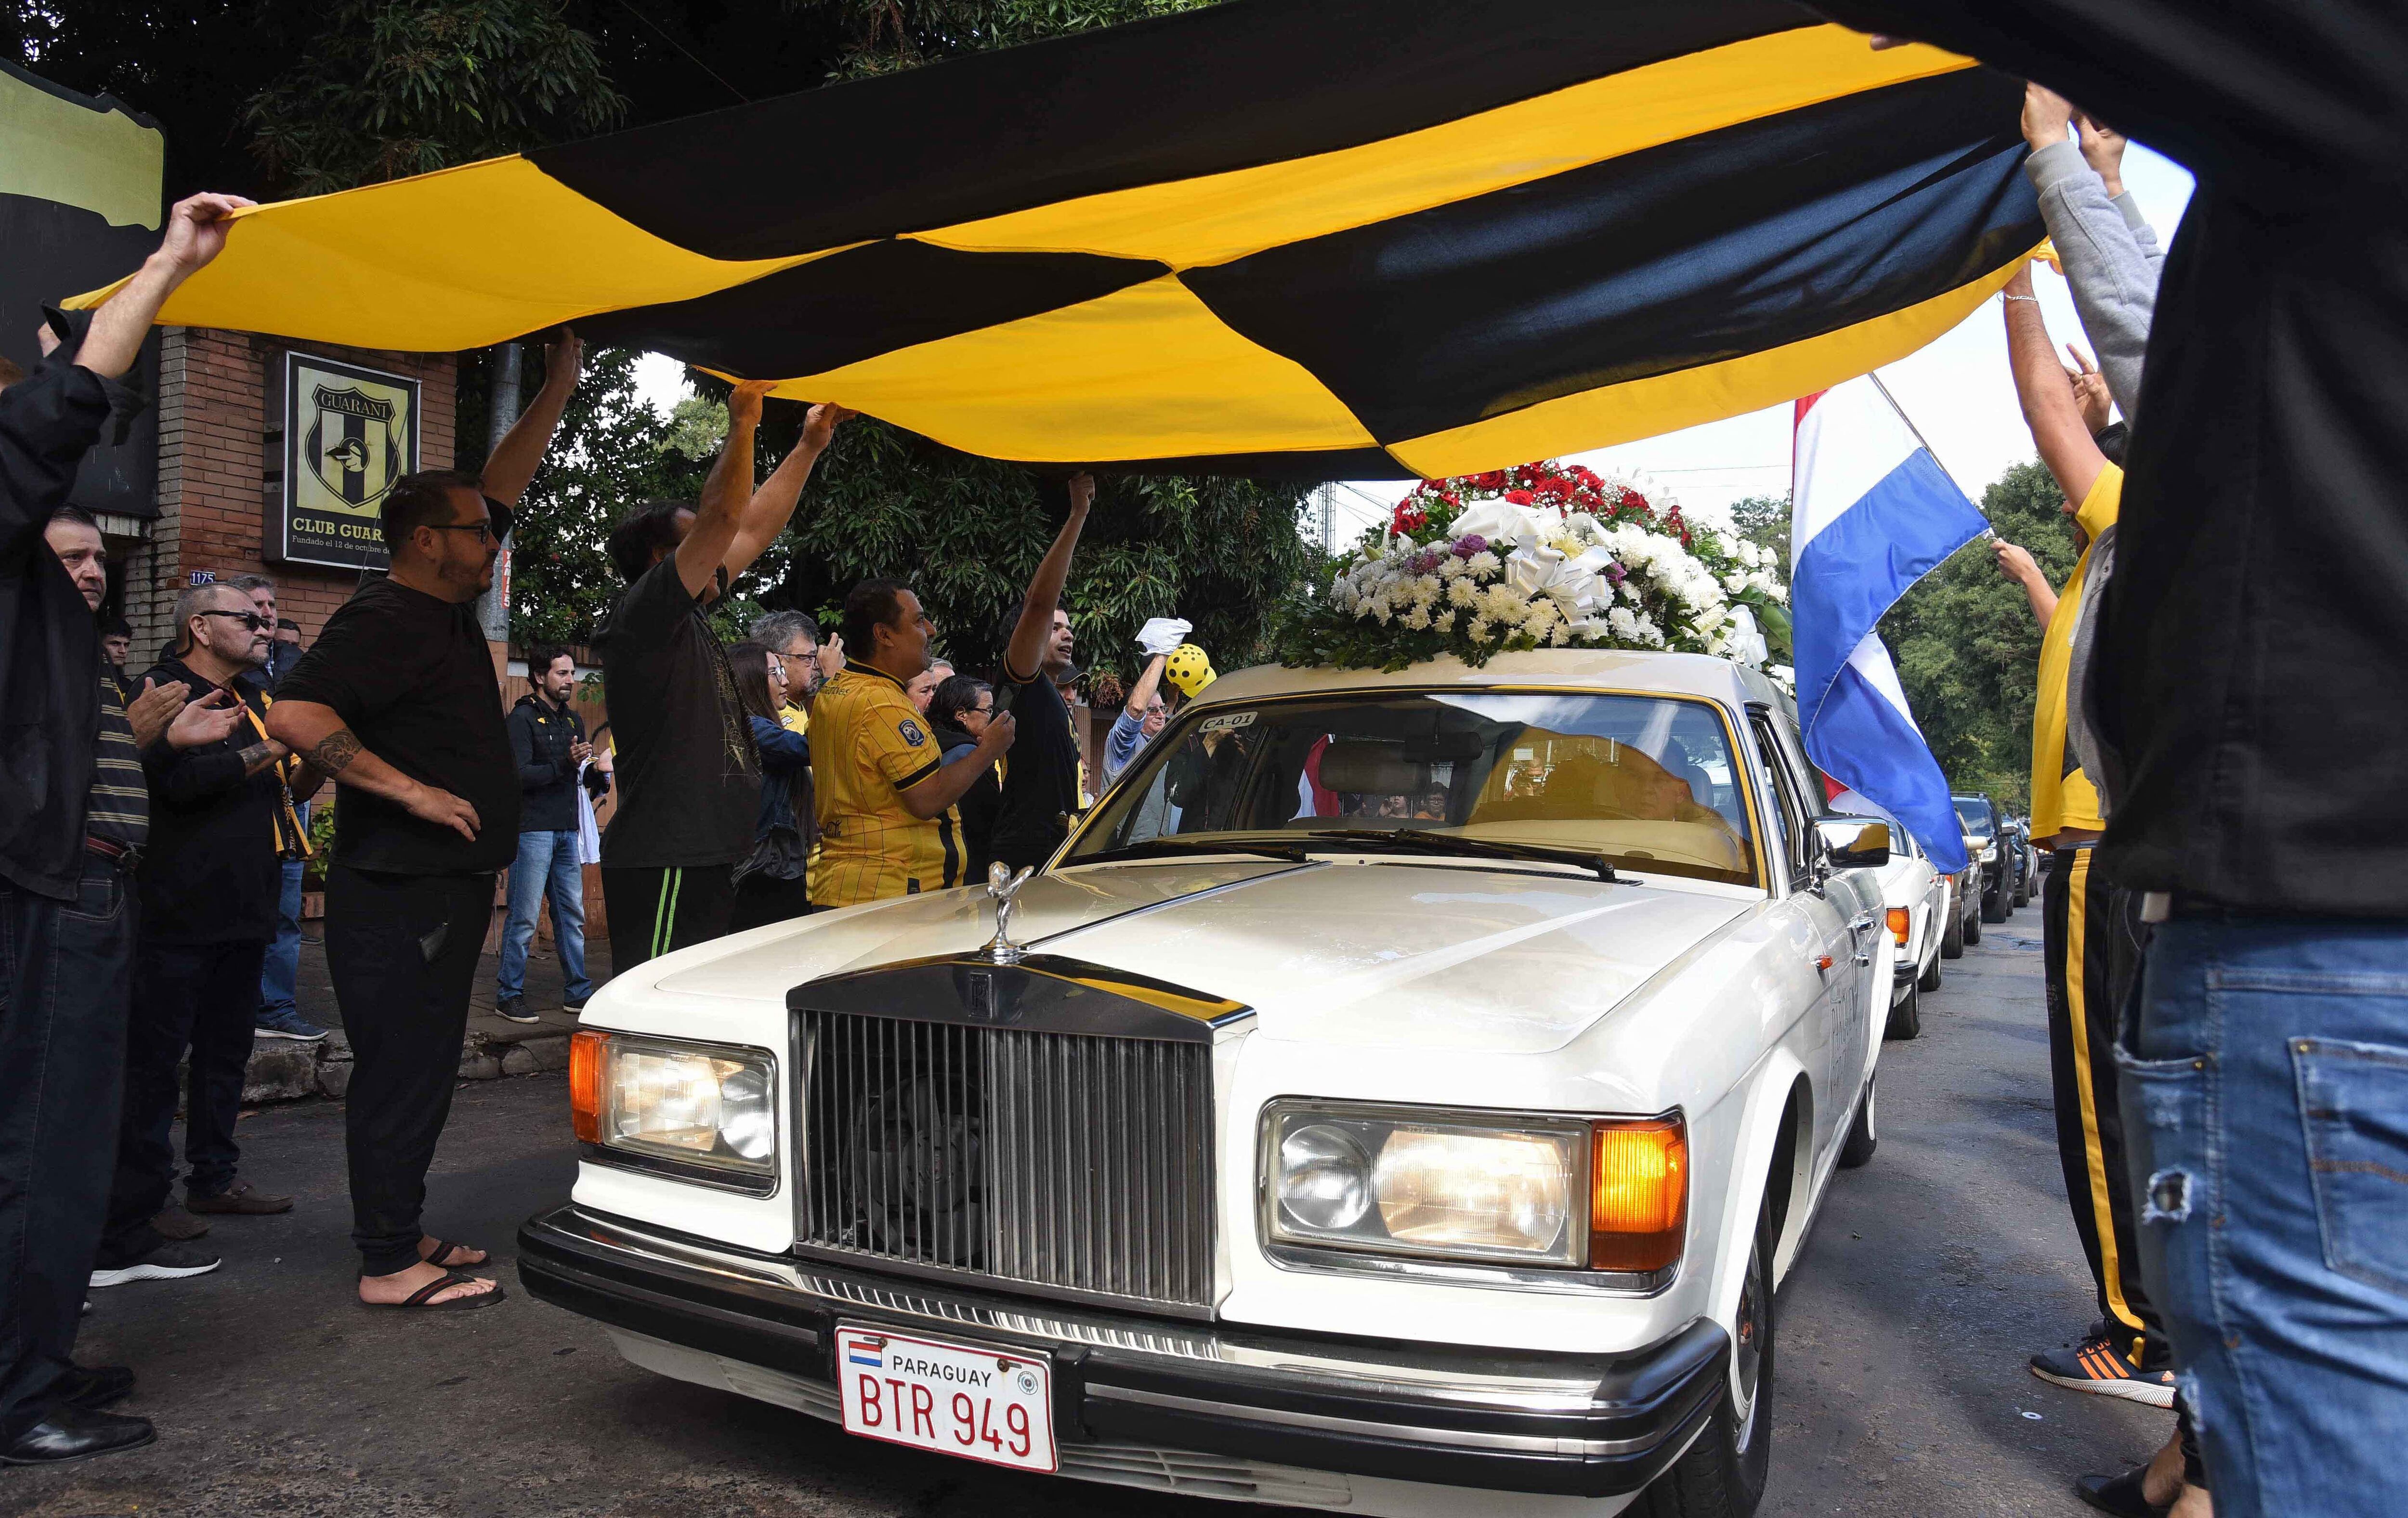 Aficionados del equipo de fútbol paraguayo Guaraní rinden homenaje al fiscal antidrogas Marcelo Pecci, quien también era hincha y miembro de la junta directiva, al pasar el coche fúnebre con su féretro antes de su funeral. (Foto por Daniel DUARTE / AFP)